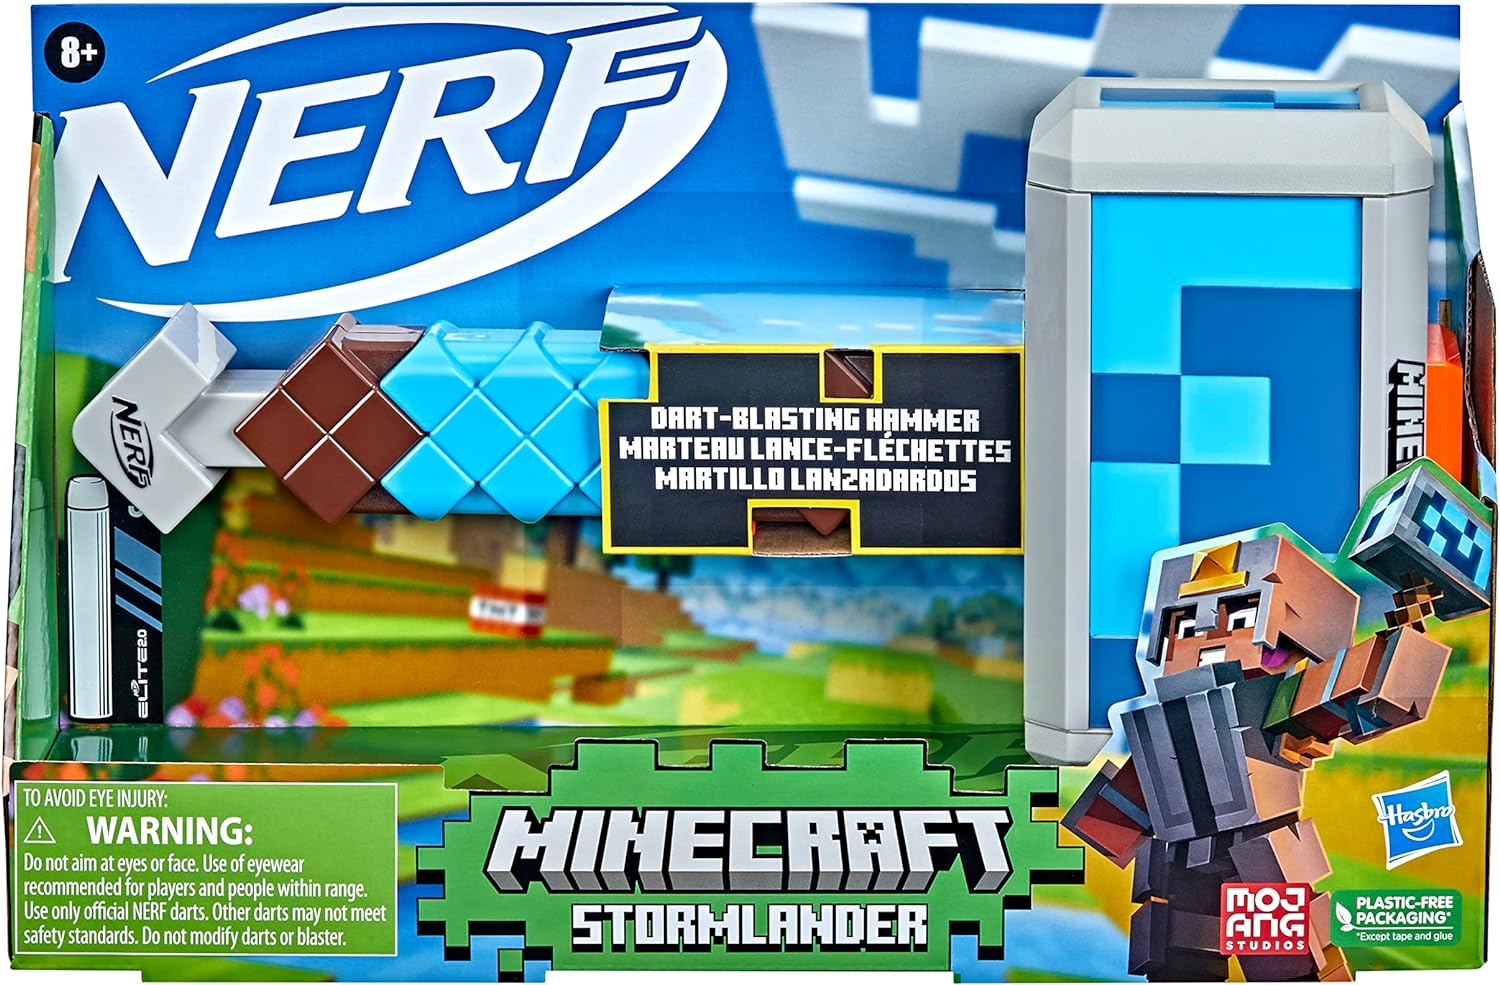 Nerf Minecraft Stormlander Dart Blasting Hammer, Fires 3 Darts, Includes 3 Official Nerf Elite Darts, Pull Back Priming Handle